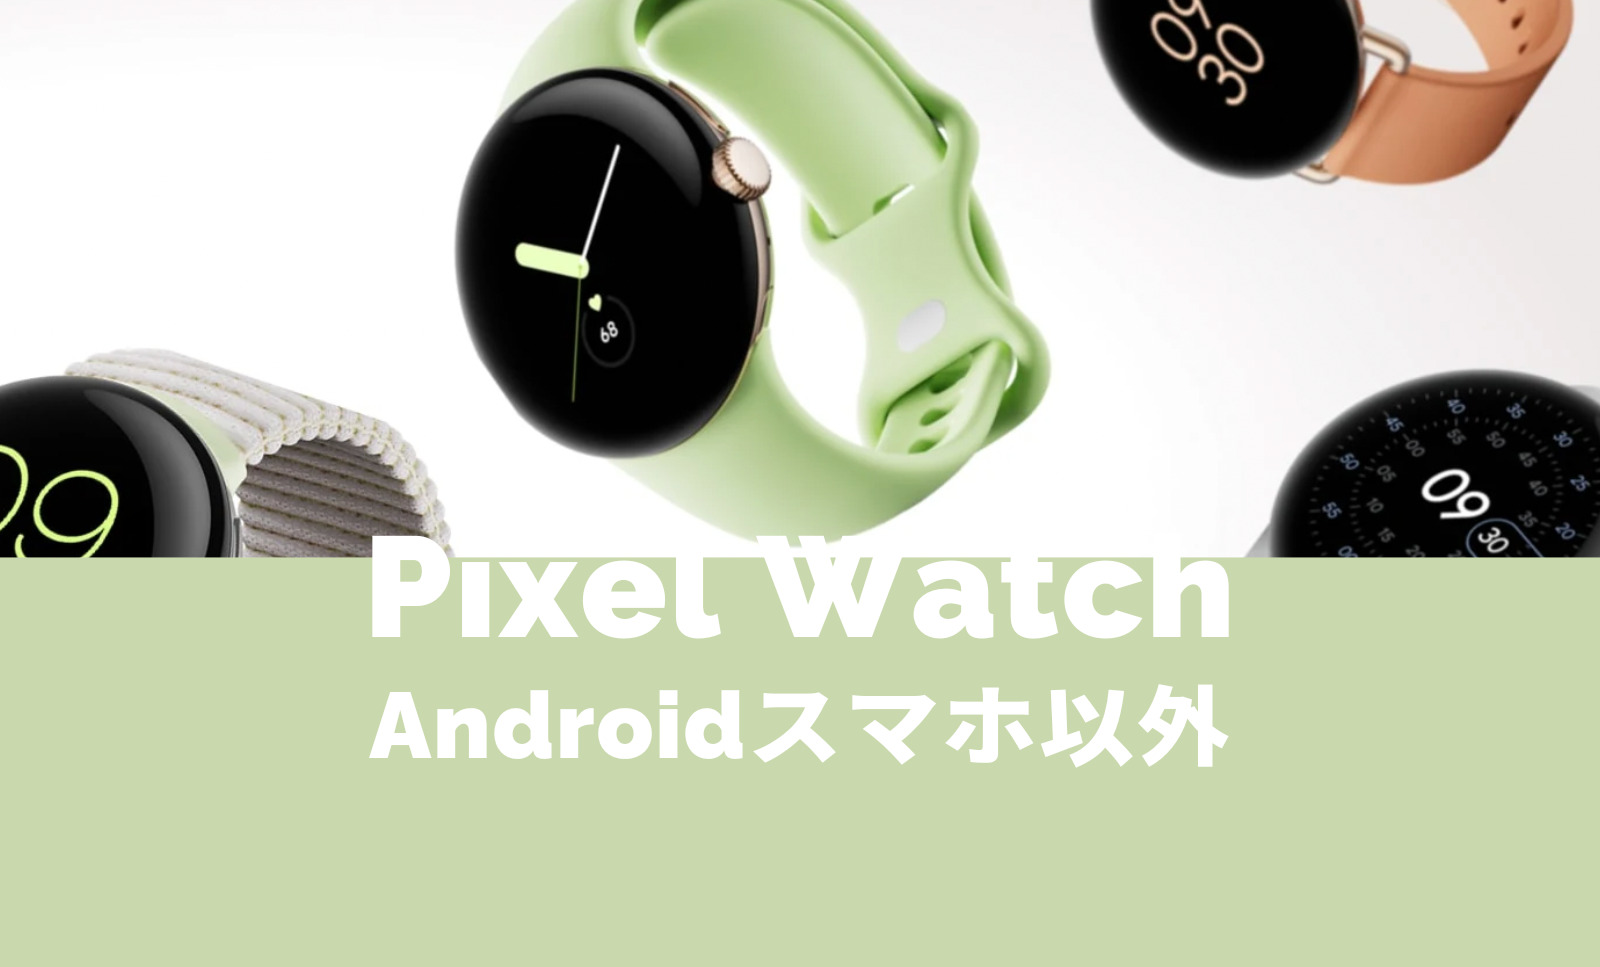 Pixel Watch(ピクセルウォッチ)やAndroid以外やPixelスマホなしでも使える？【Google】のサムネイル画像